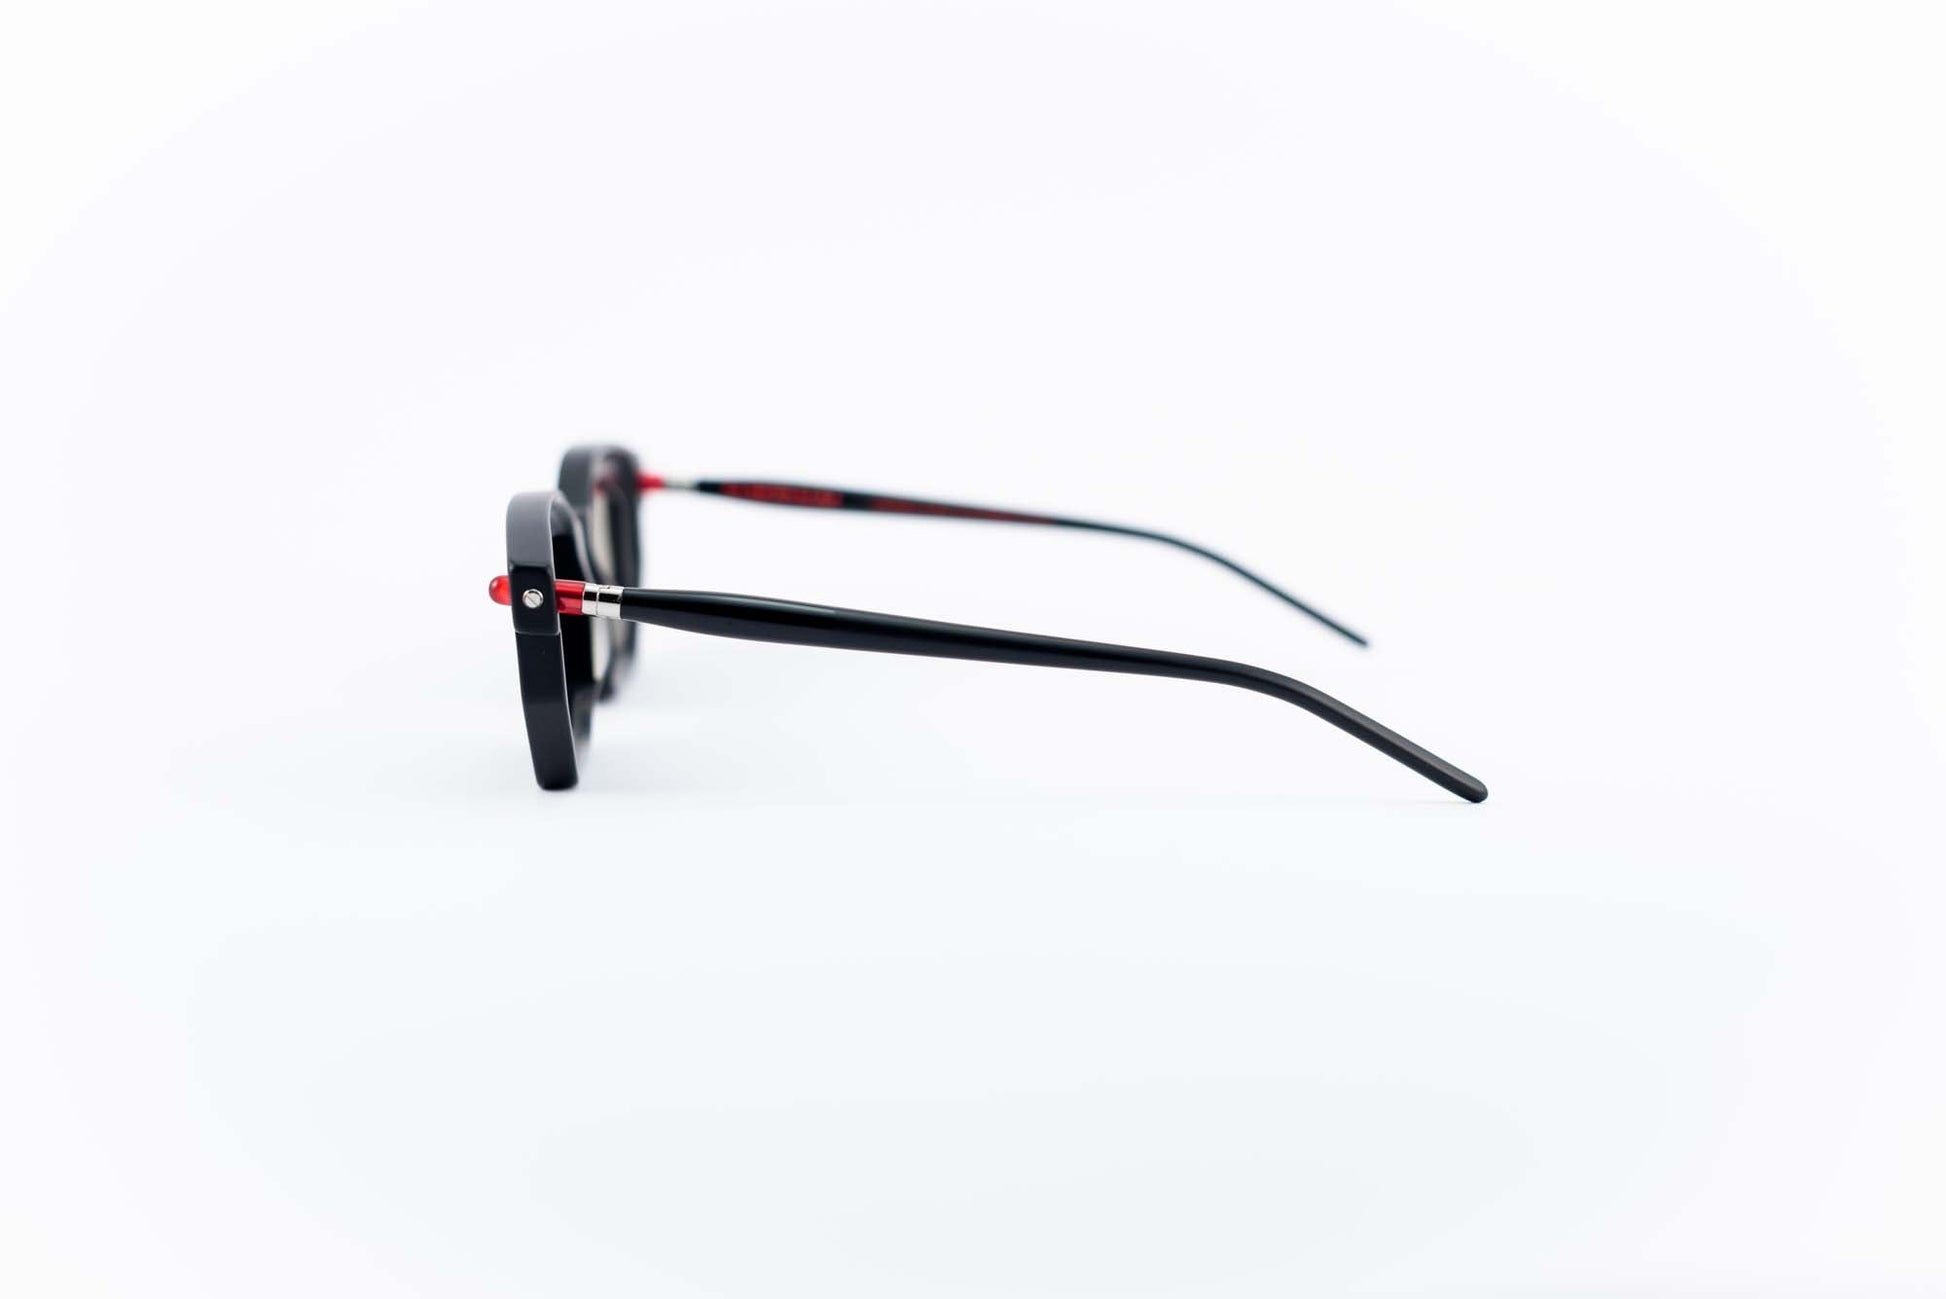 Kuboraum Occhiali da sole Nero / Acetato / Squadrato Kuboraum Maske P14 BMR: occhiale in acetato nero poligonale da sole